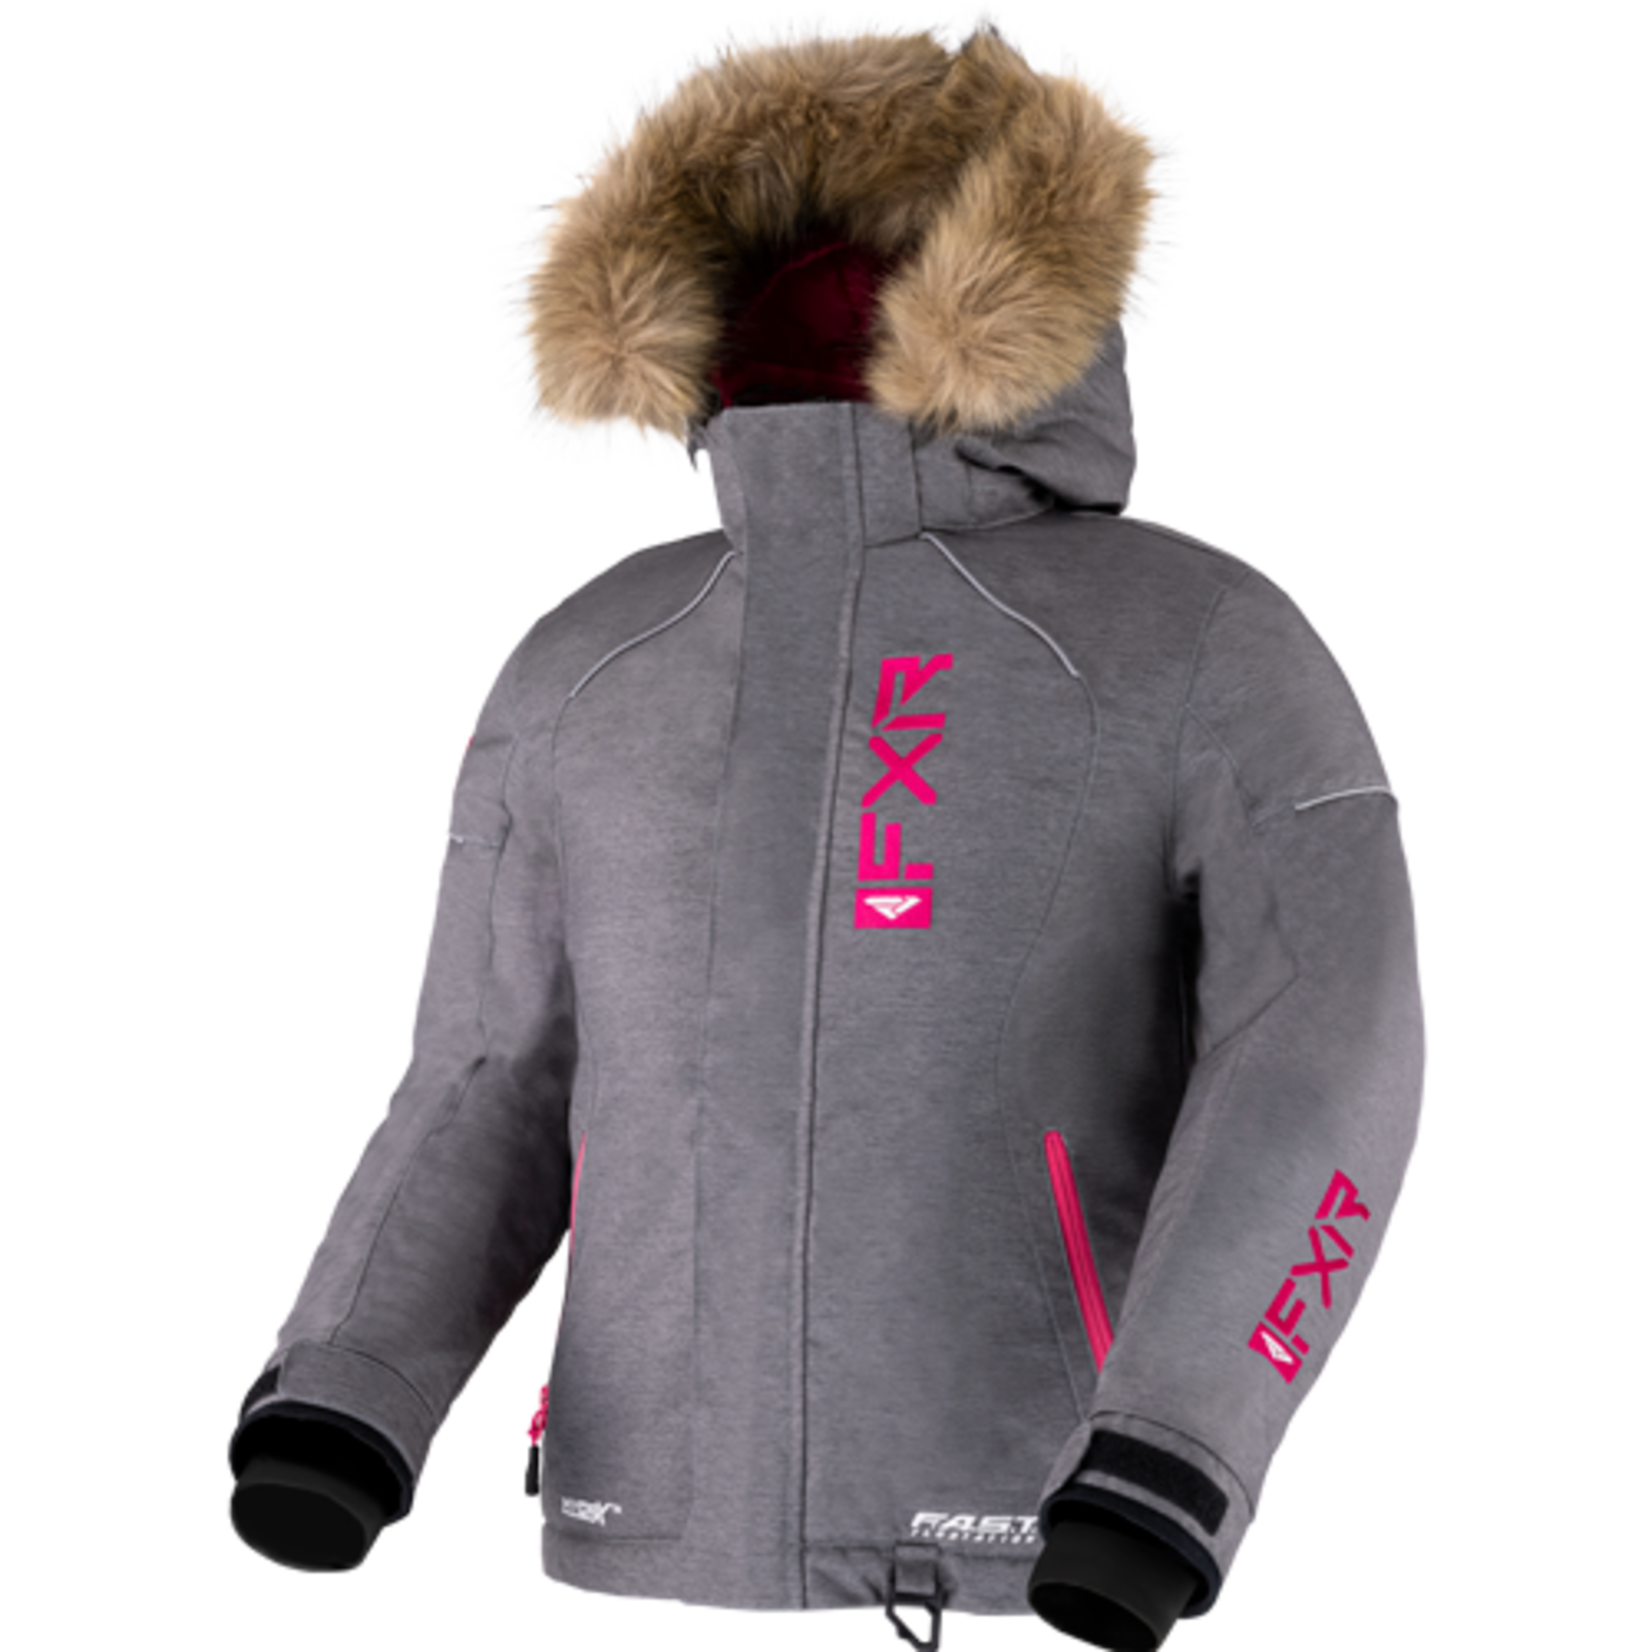 FXR FXR Winter Jacket, Fresh, Child, Girls